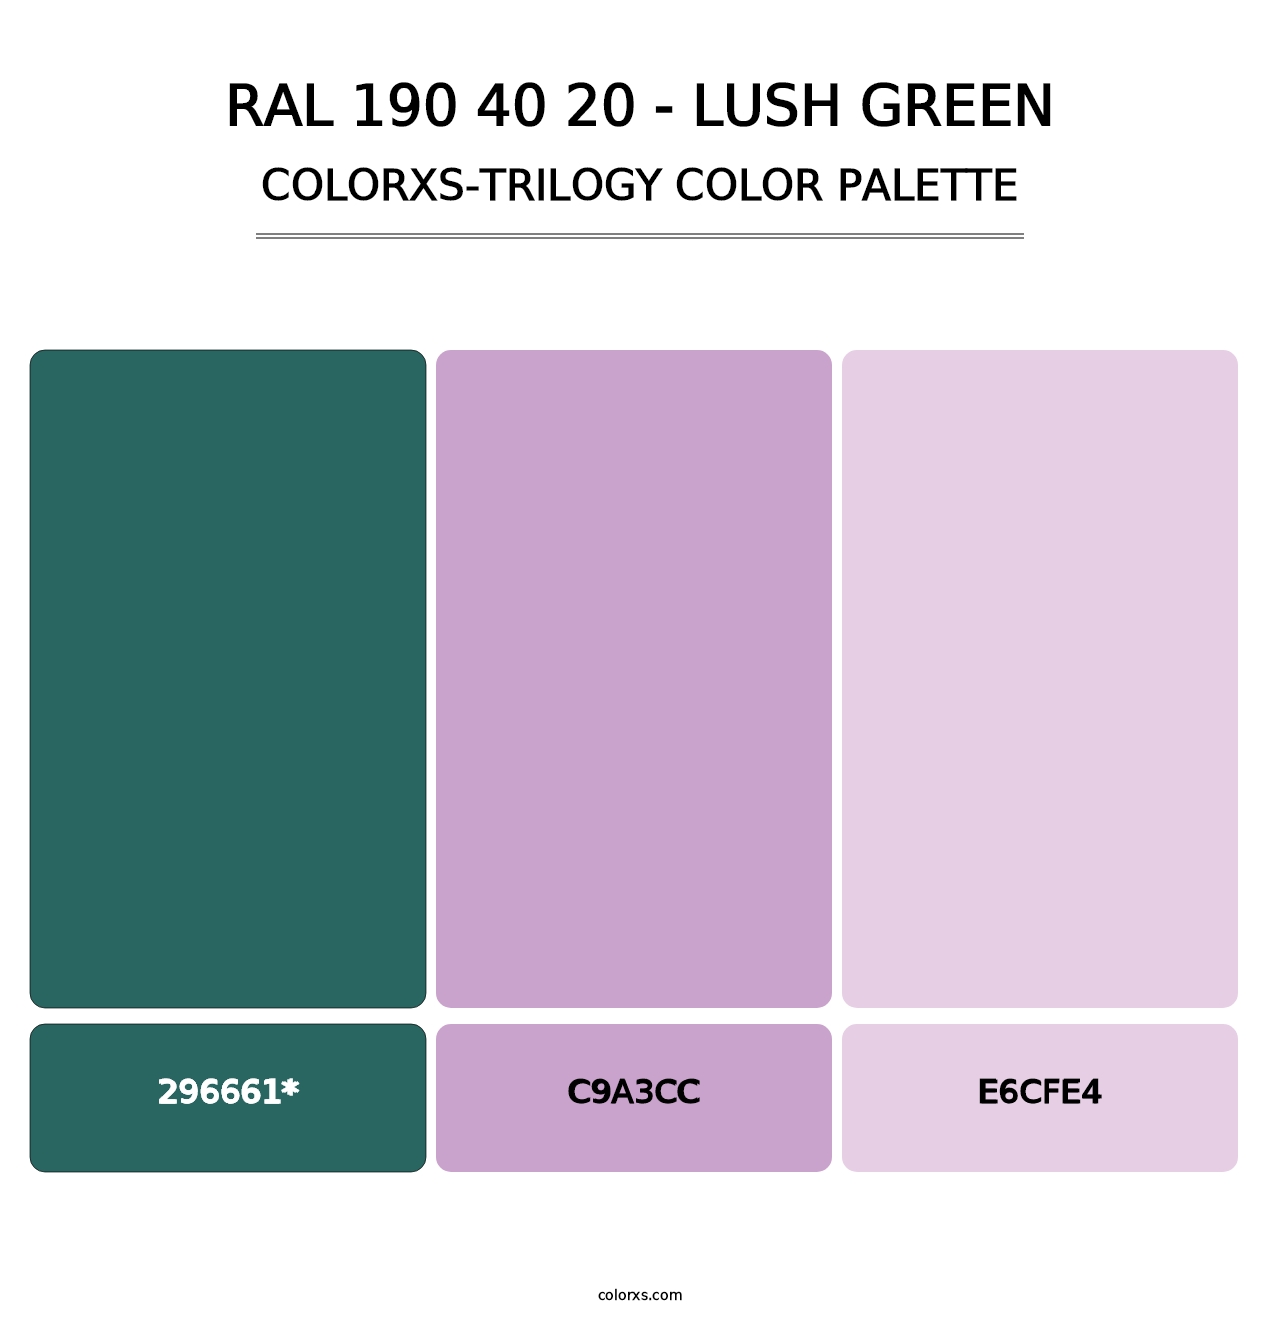 RAL 190 40 20 - Lush Green - Colorxs Trilogy Palette